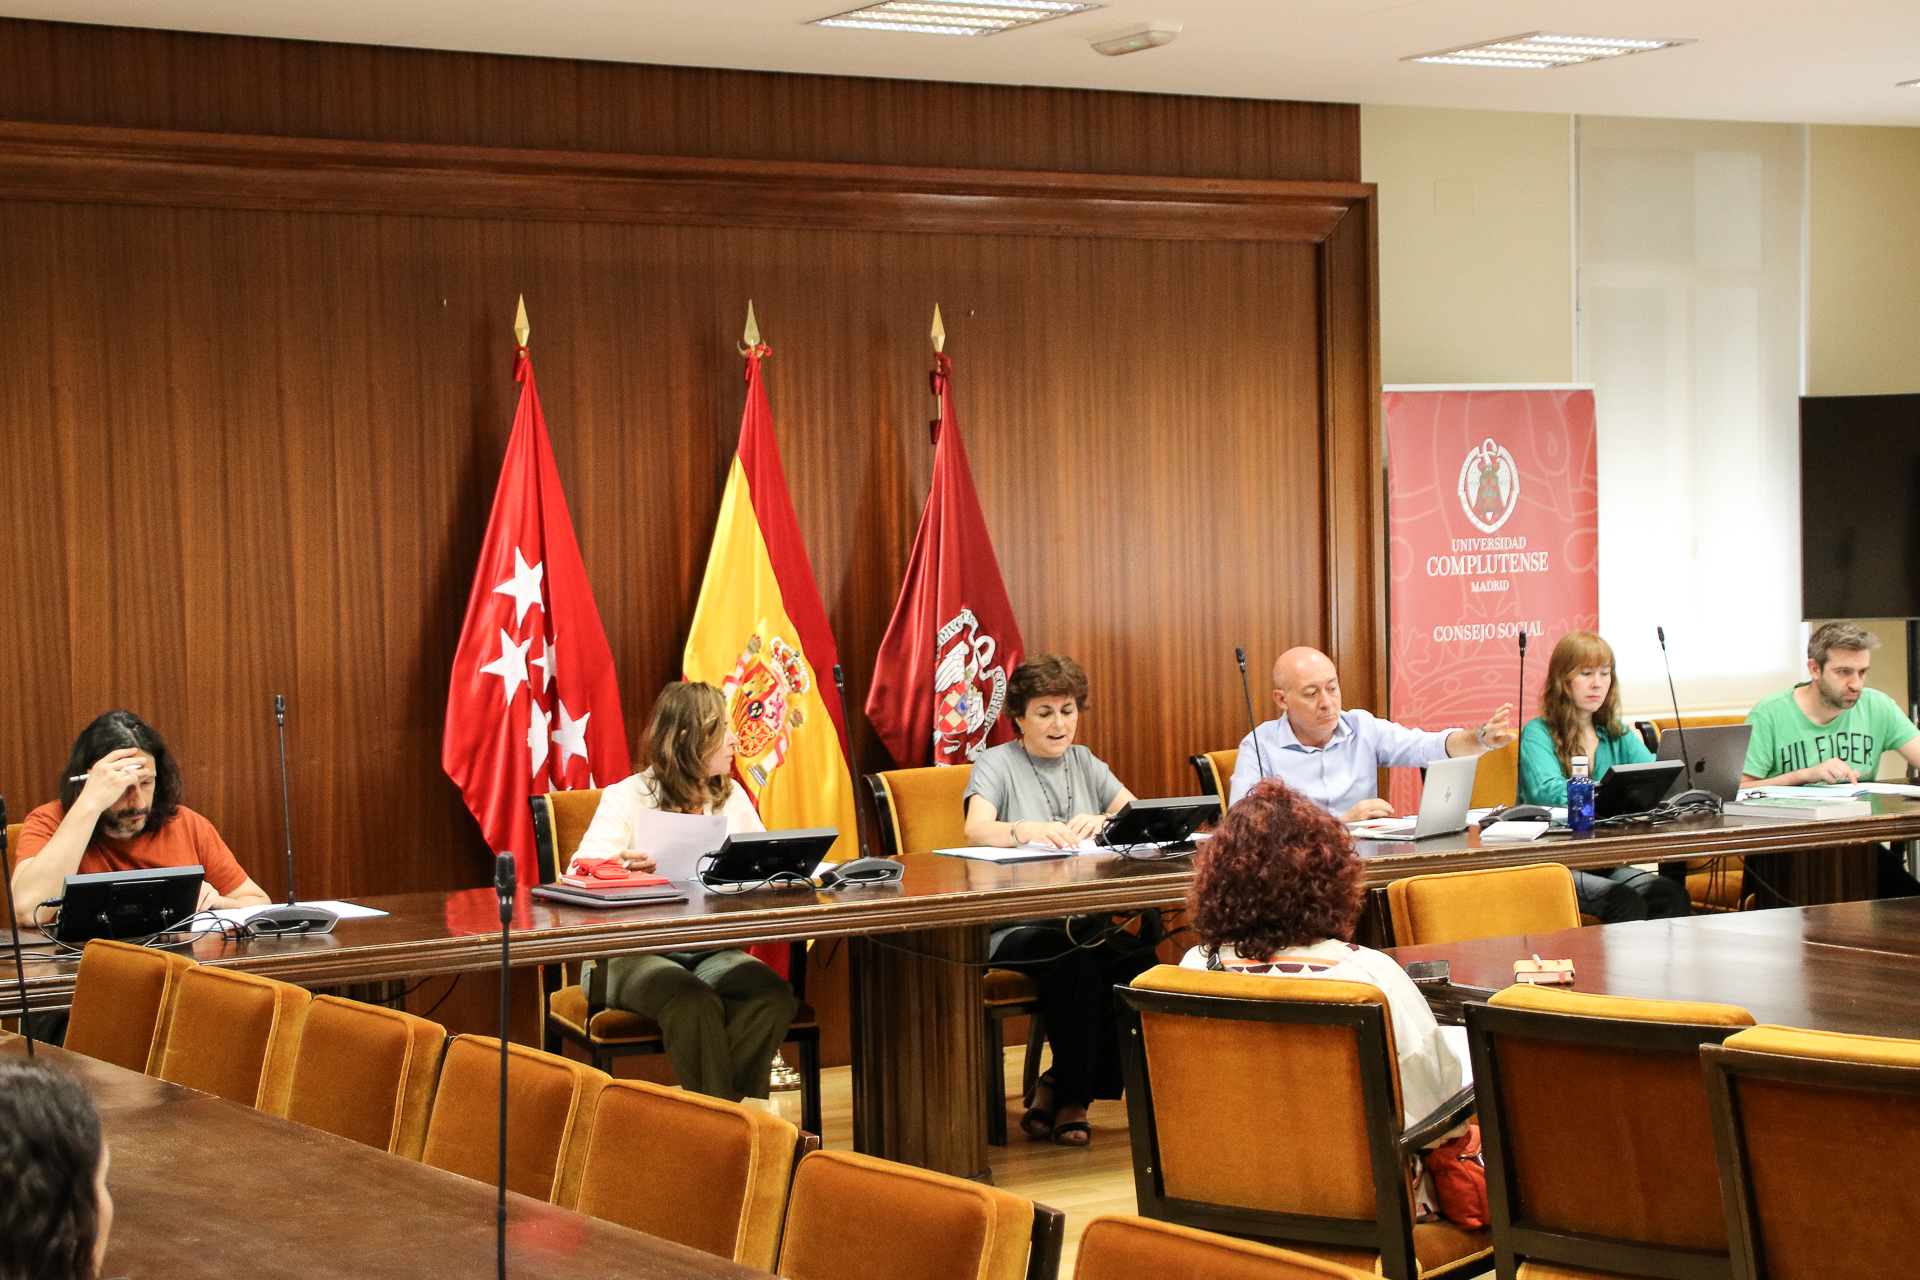 reunión de la comisión de patrimonio histórico artístico de la universidad complutense de madrid-2